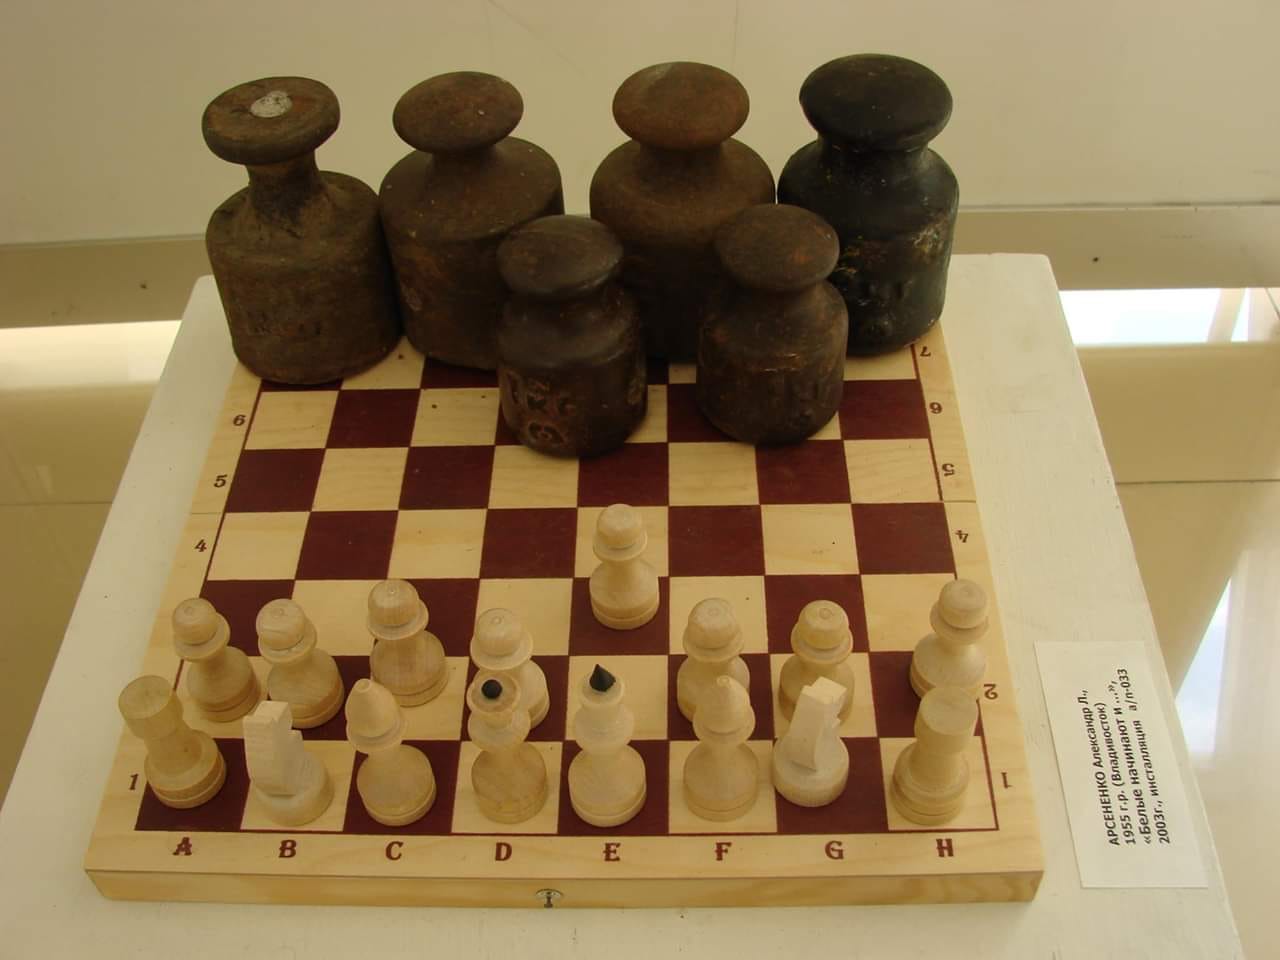 1280x960, 75 Kb / Александр Арсененко, гири, шахматы, ход